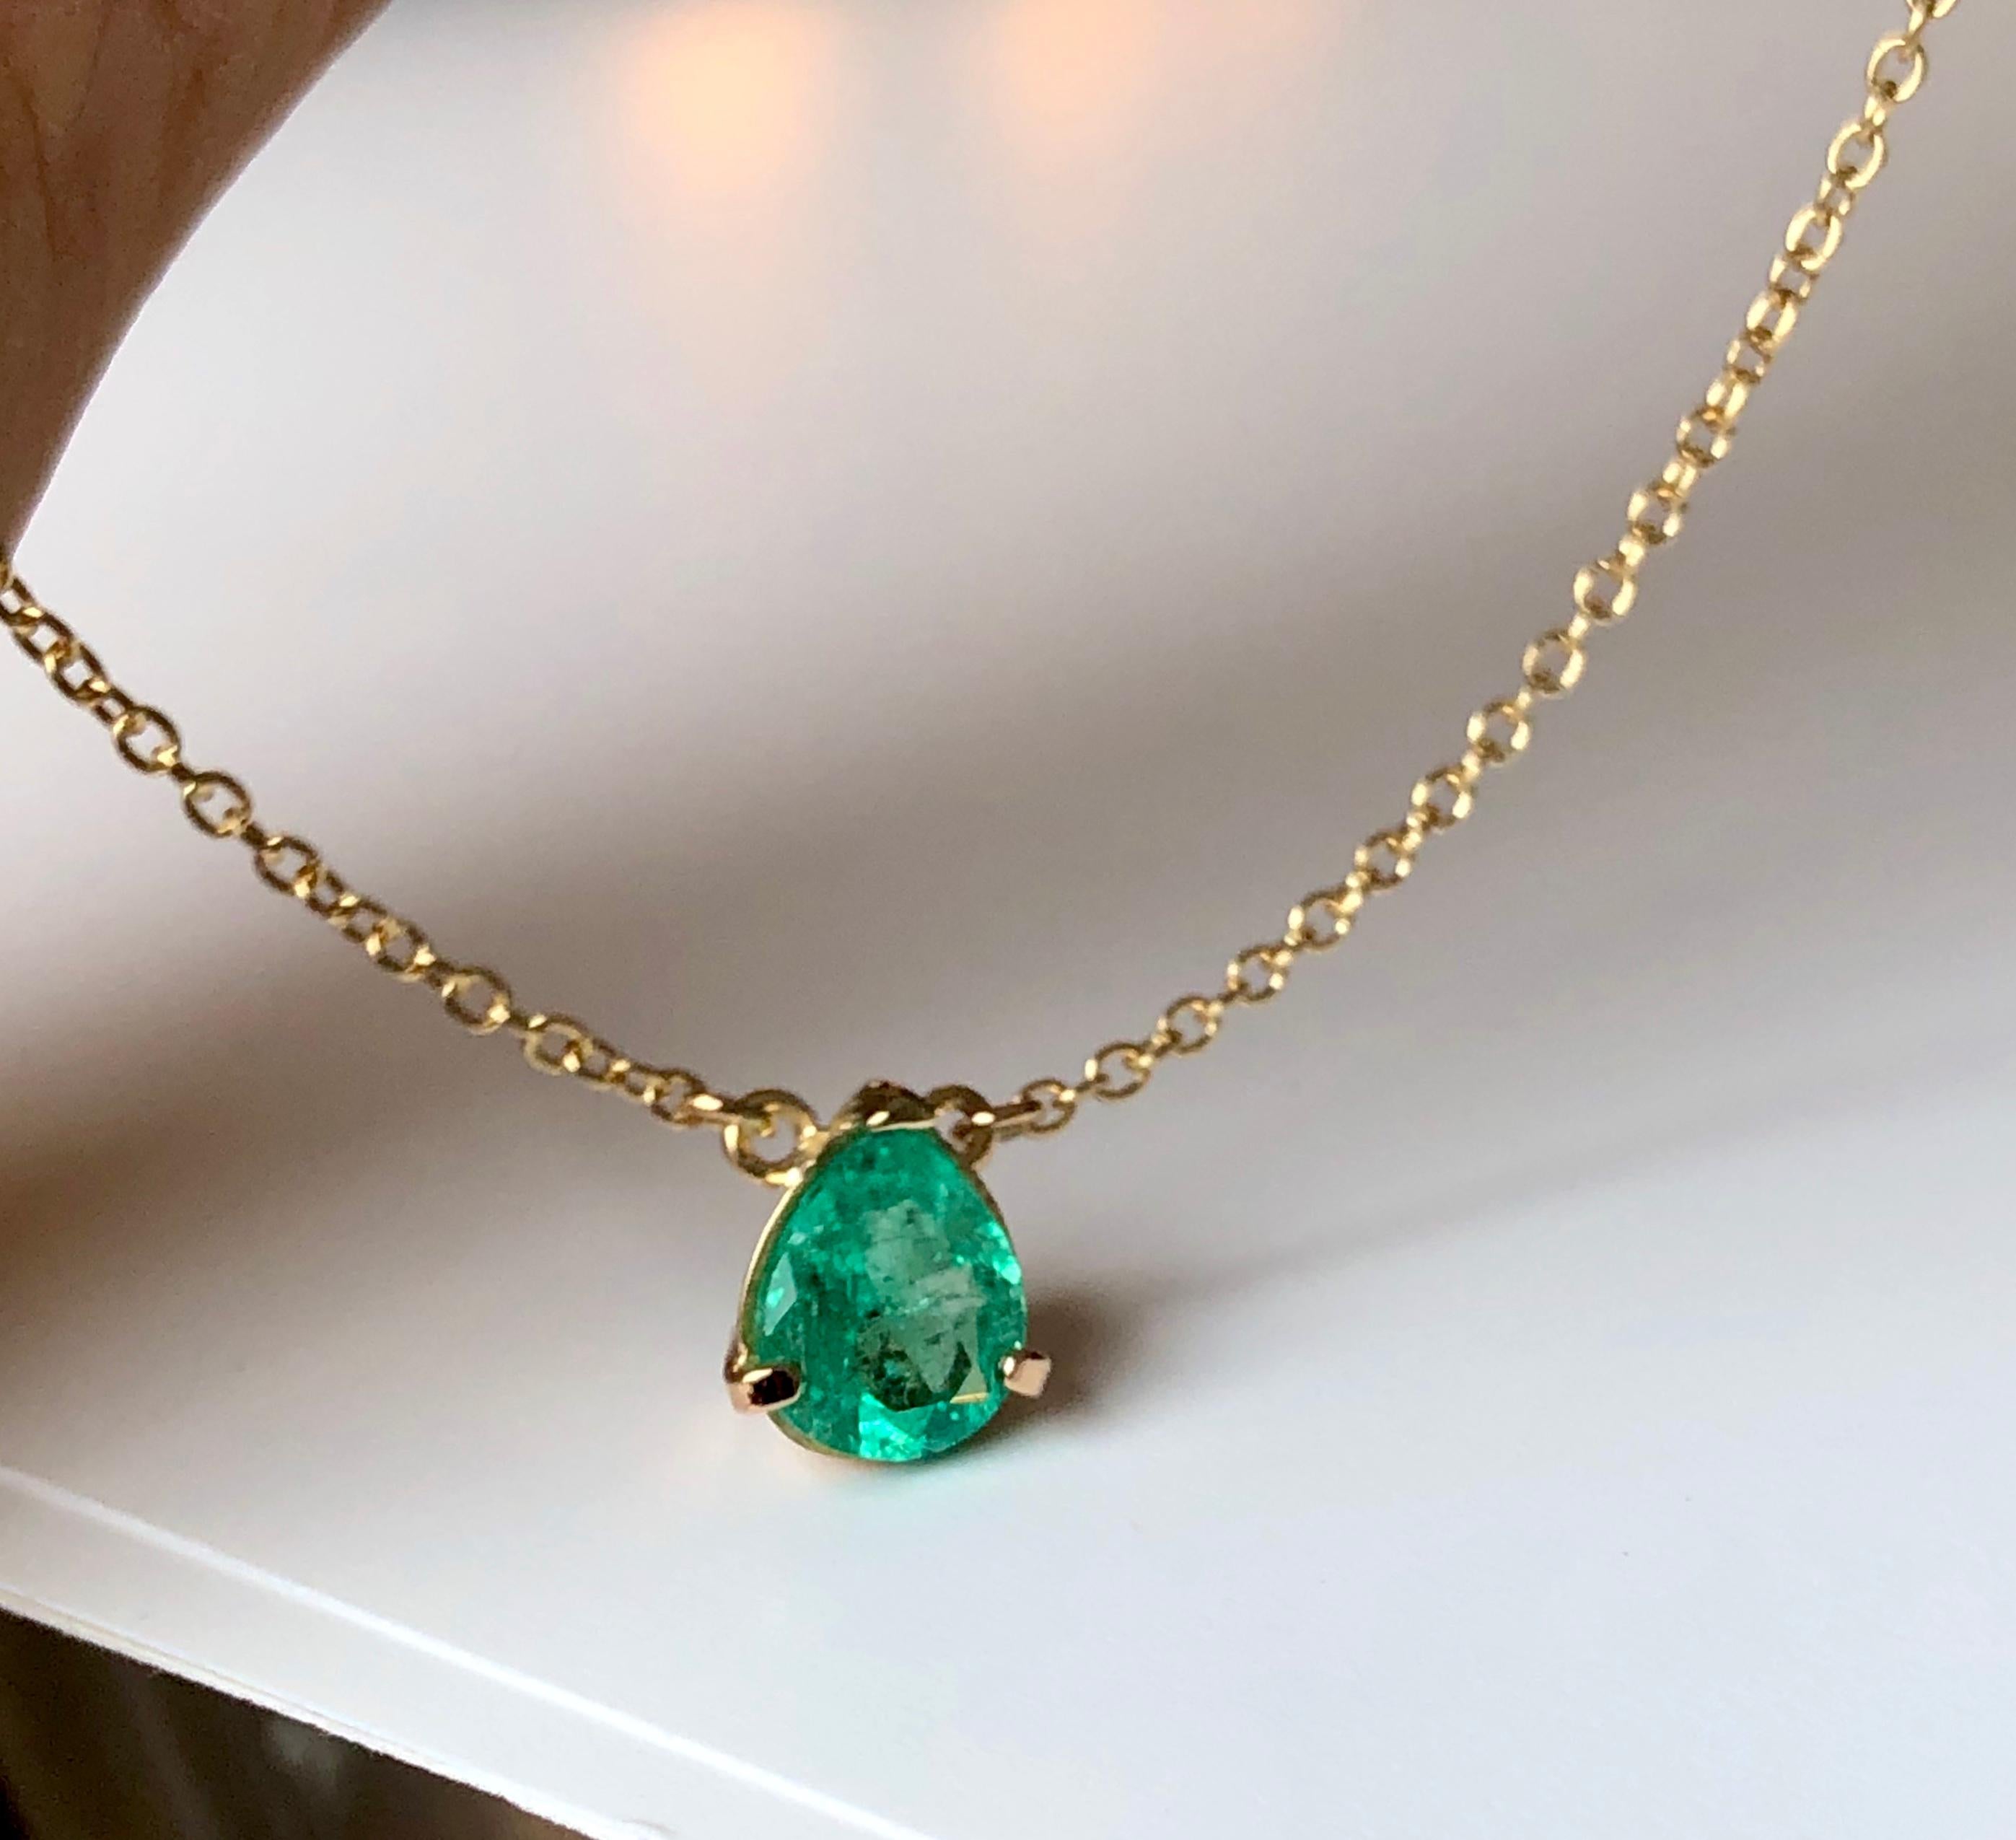 Diese tropfenförmige Solitär-Halskette hat einen Birnenschliff,  mittel grün natürlich  Kolumbianischer Smaragd von 2,25 Karat. Set in 18K Gelbgold Einstellung und an einem 16 Zoll lang, 18k Gold Kette befestigt.  Der Stil ist sehr